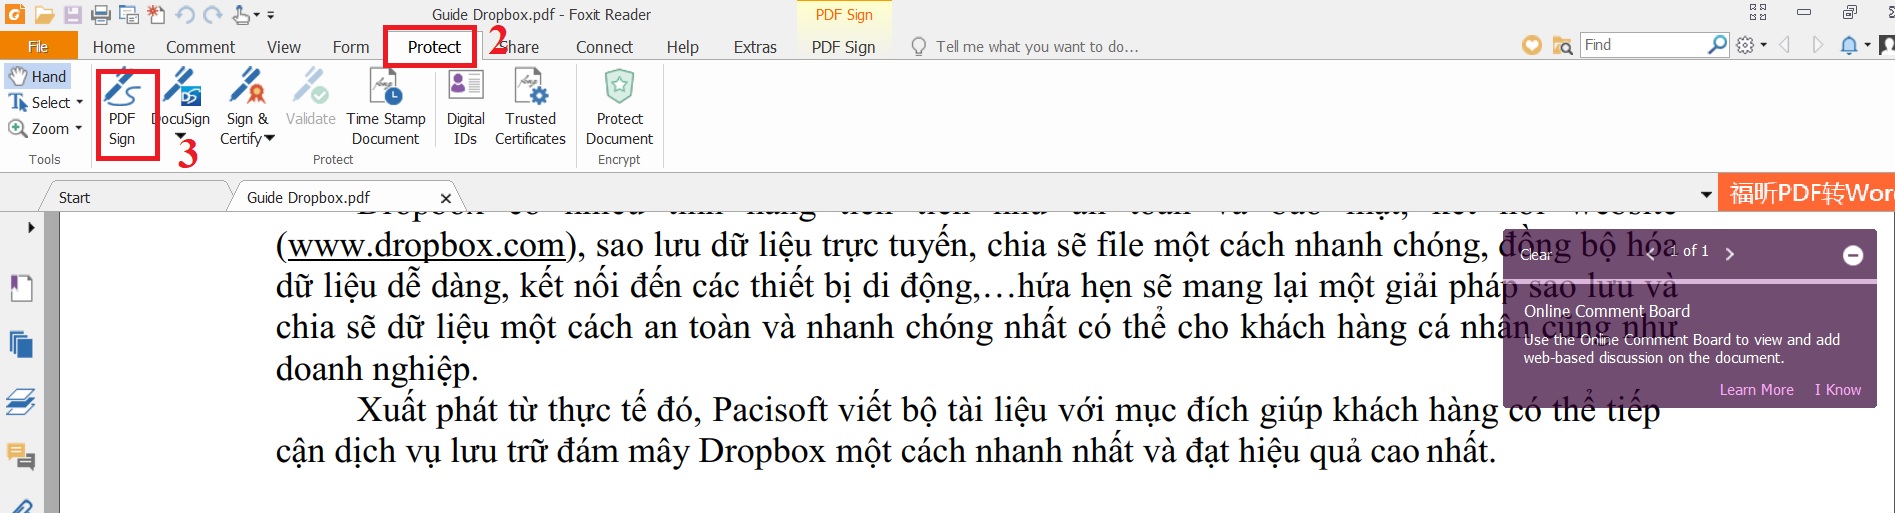 Cách tạo chữ ký tập tin PDF trong Foxit Reader